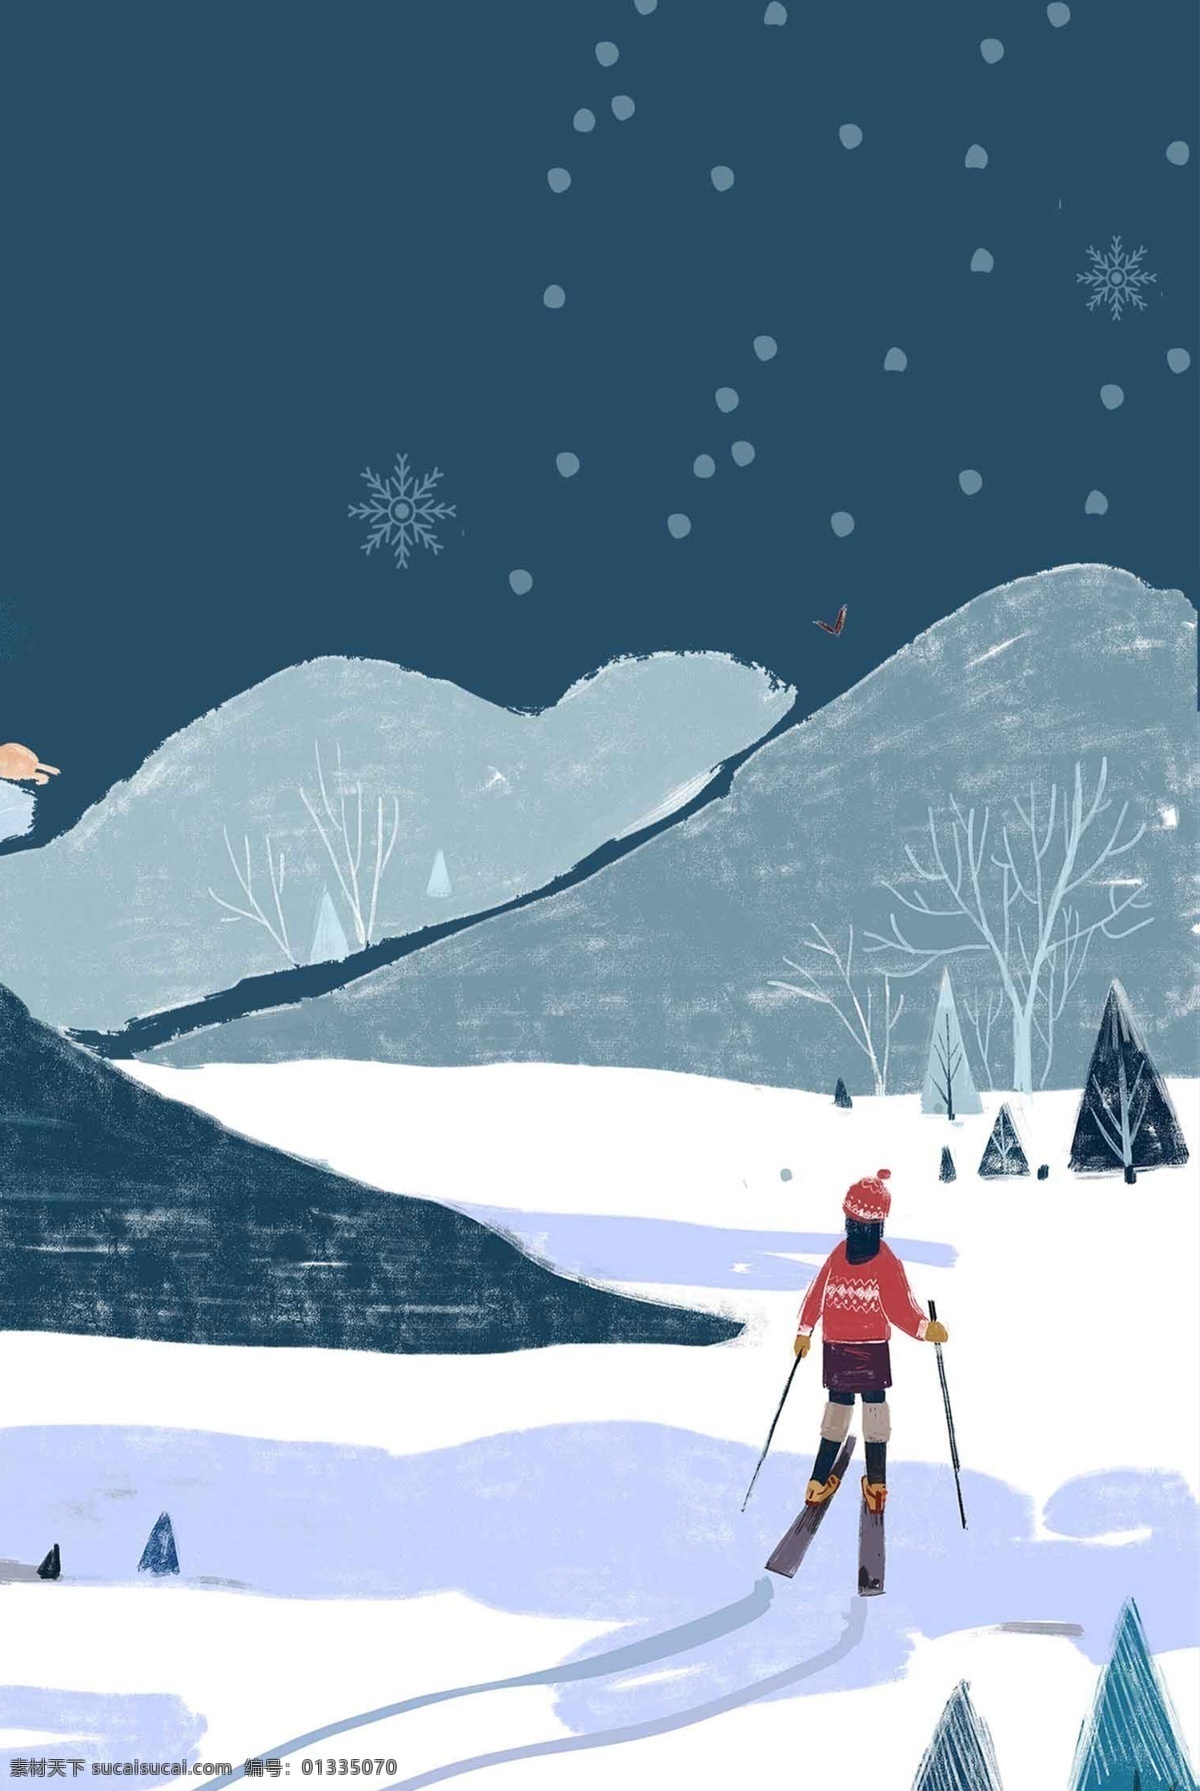 12月你好 滑雪 插画 背景 图 女孩 12月 冬季 卡通 淡雅 精简 开心